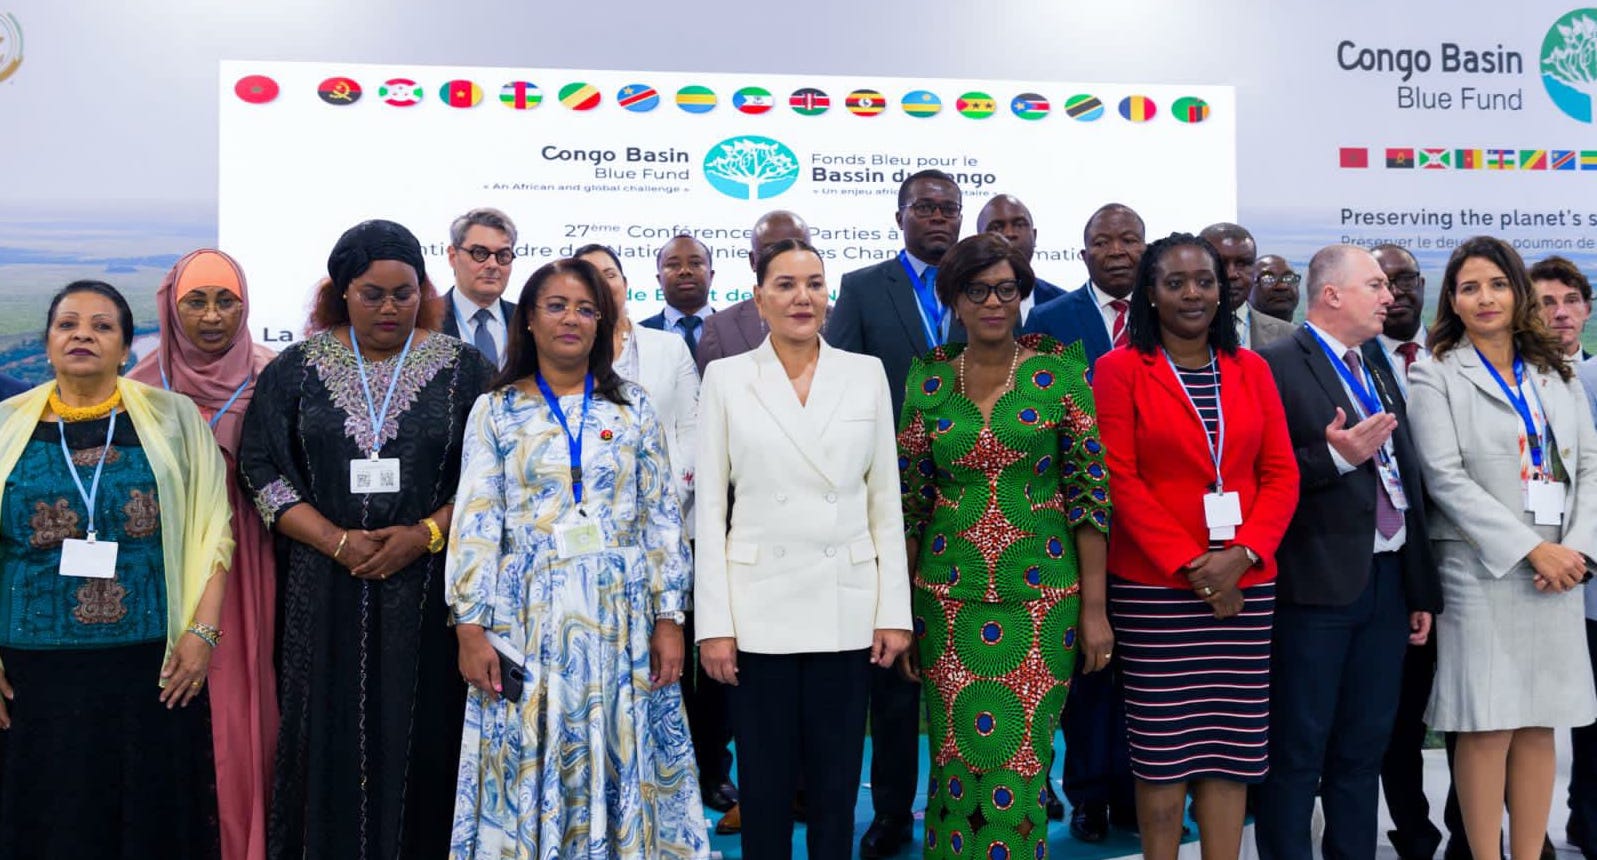 Charm el-Cheikh – COP27: SAR la Princesse Lalla Hasnaa préside un Side Event de haut niveau sur la lutte contre les changements climatiques dans le Bassin du Congo